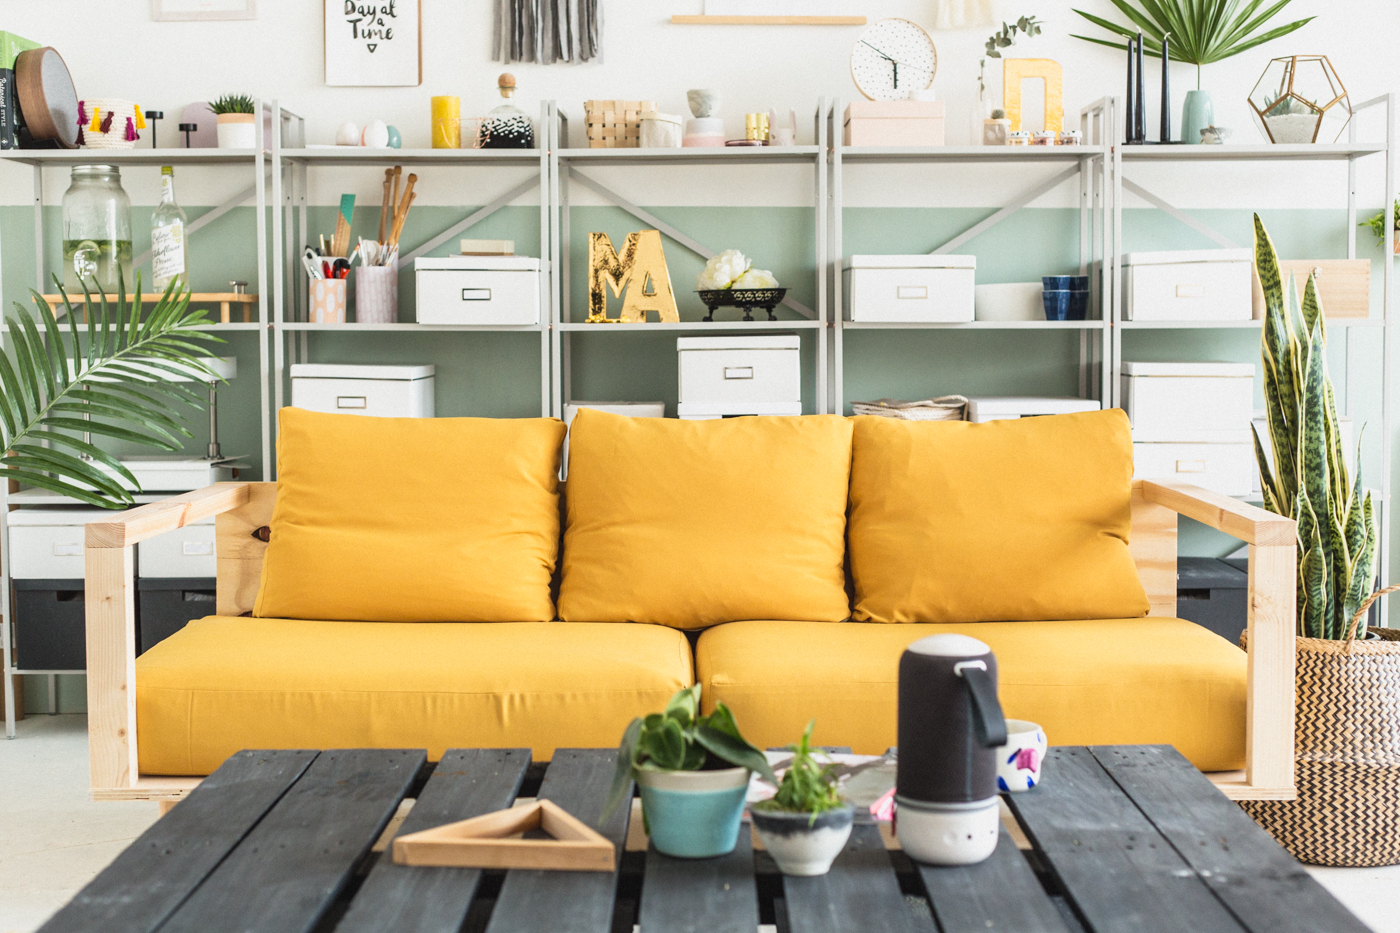 Tham khảo mẫu ghế sofa màu vàng cực chất mùa gió về